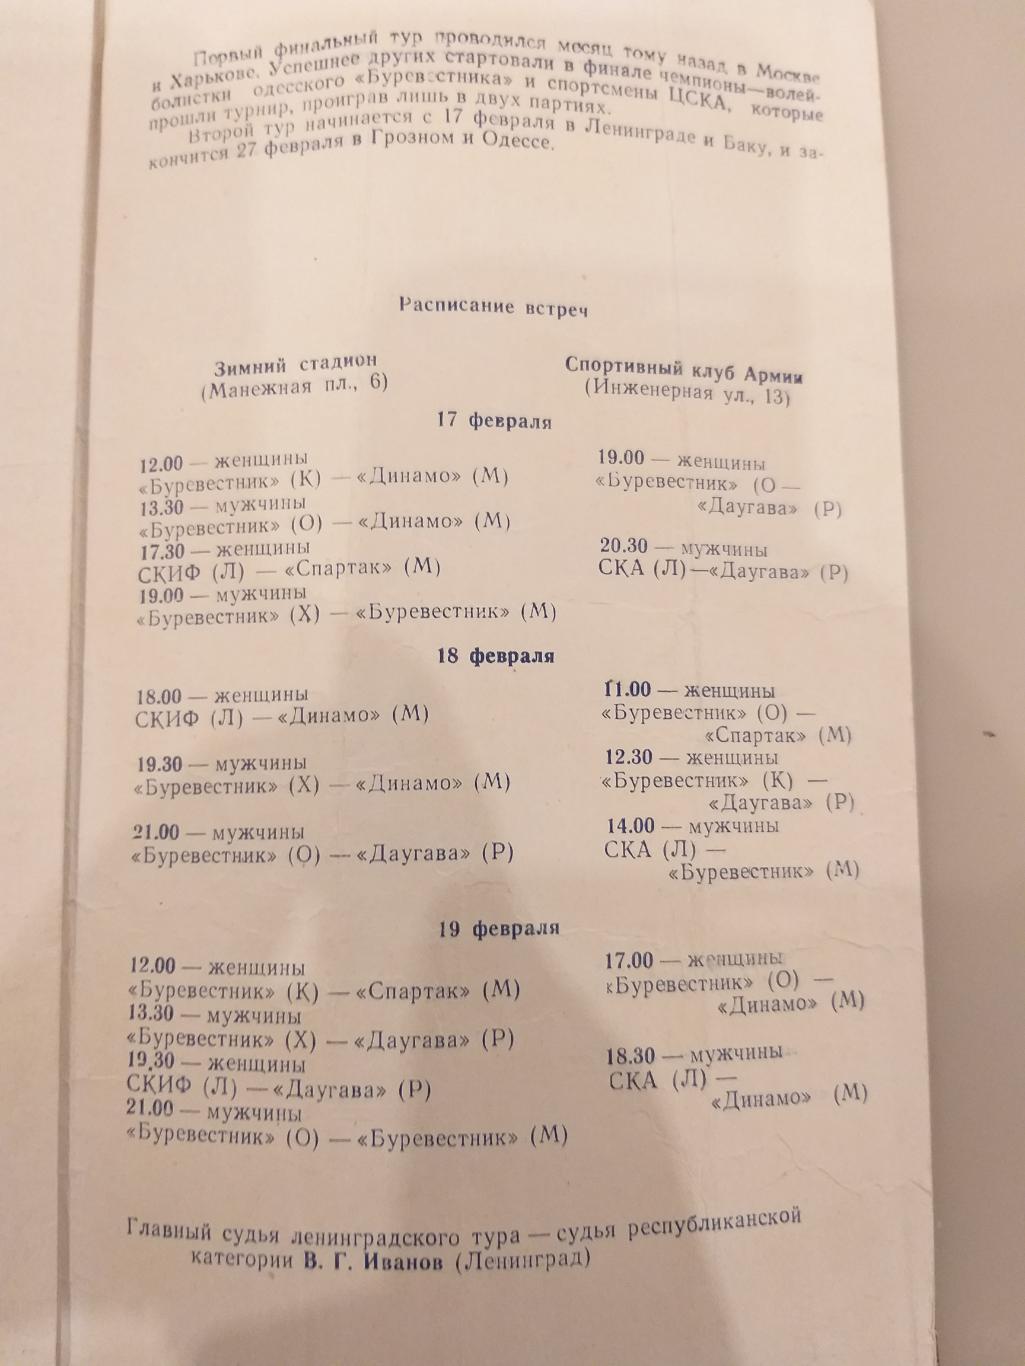 Волейбол 17-19.02.1962 Киев,Одесса,Спартак(Москва), Даугава,Харьков,Динамо(Москв а 1